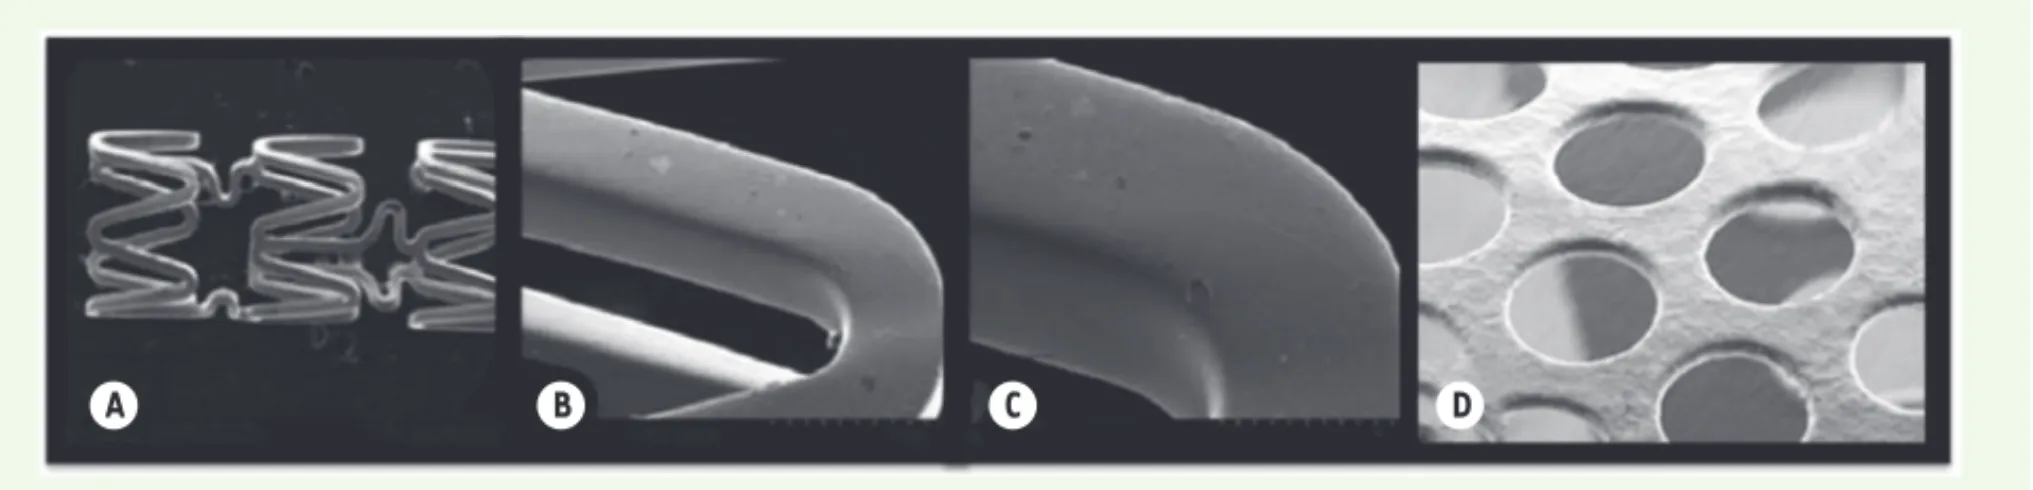 Figure 2. Un stent actif vu au microscope électronique à balayage à différents grossissements.